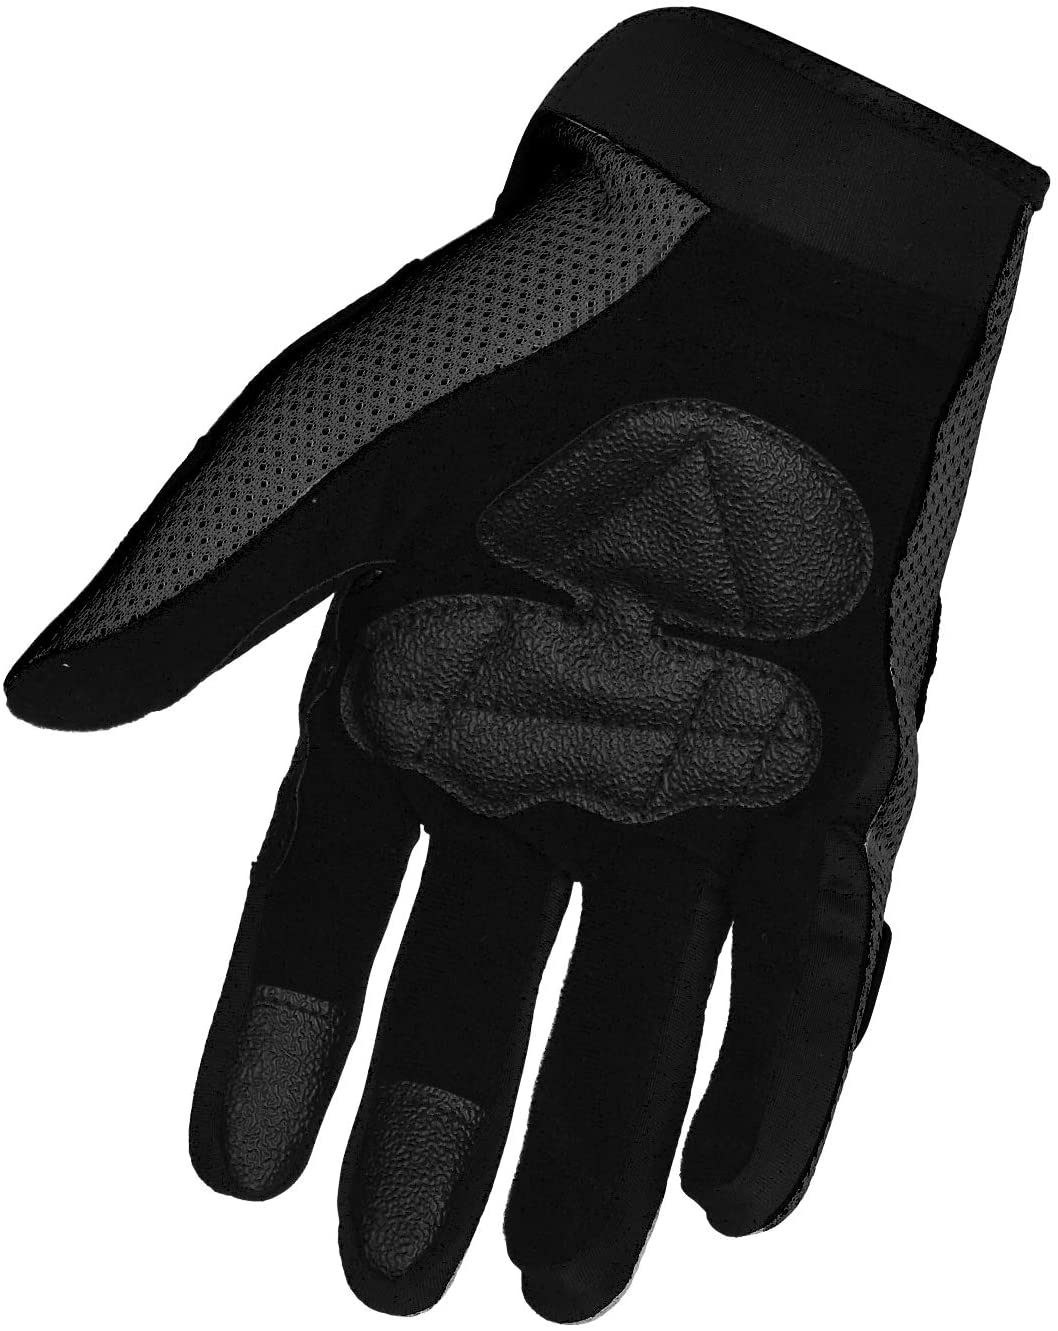 Motorcycle Gloves | Street Pocket Bike Full Finger Gloves | Motorcycle Knuckle Protected Gloves